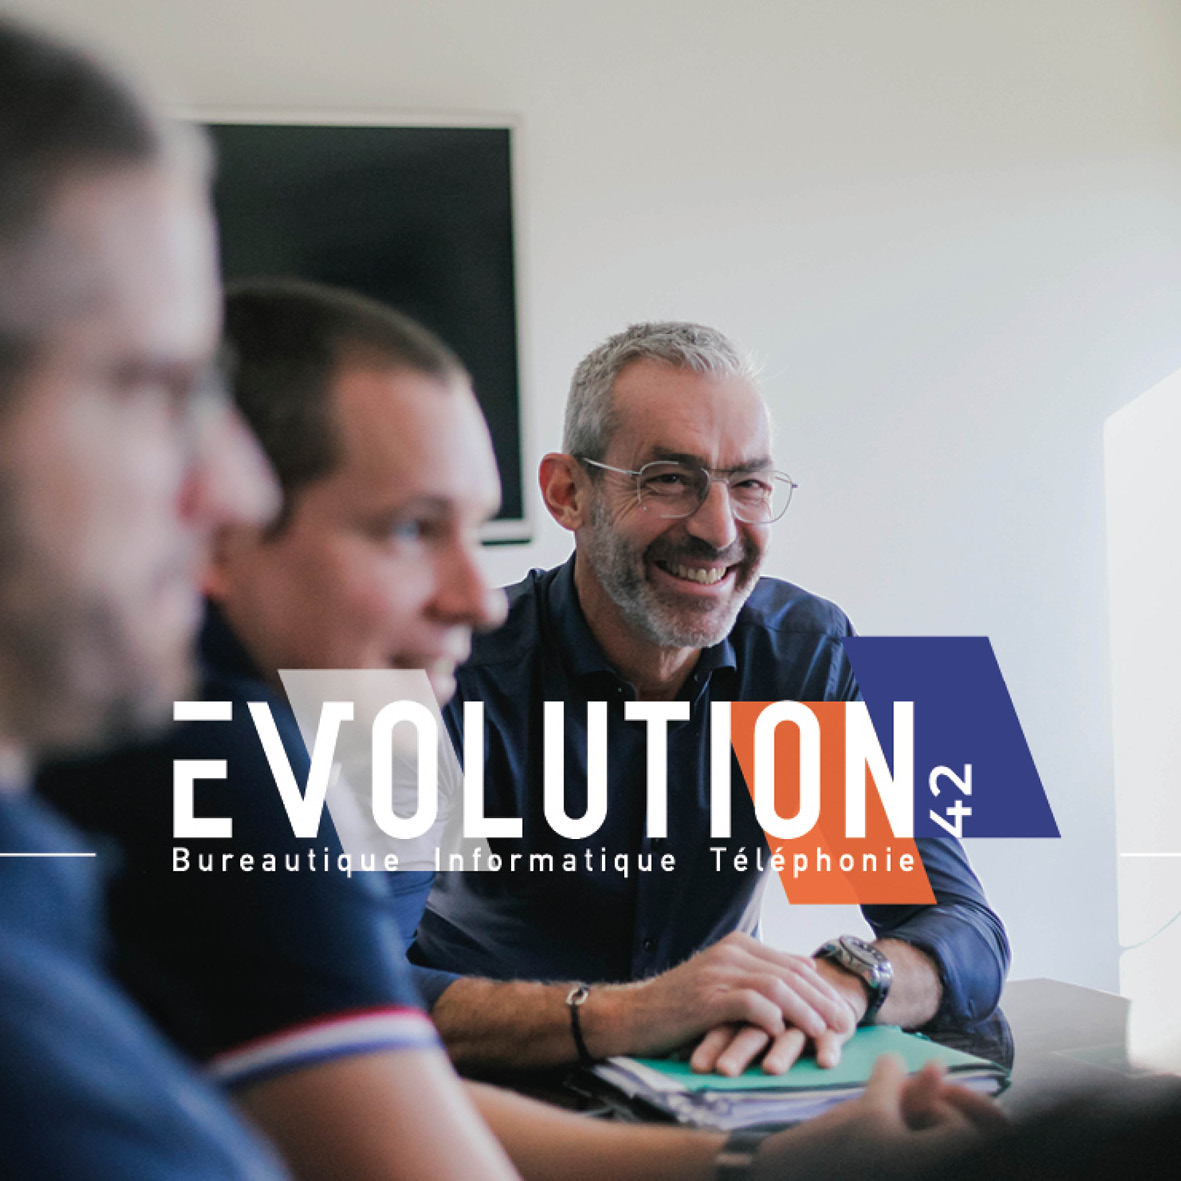 logo evolution 42 solution bureautique informatique et téléphonie sur visuel photo du dirigeant daniel robert et son équipe